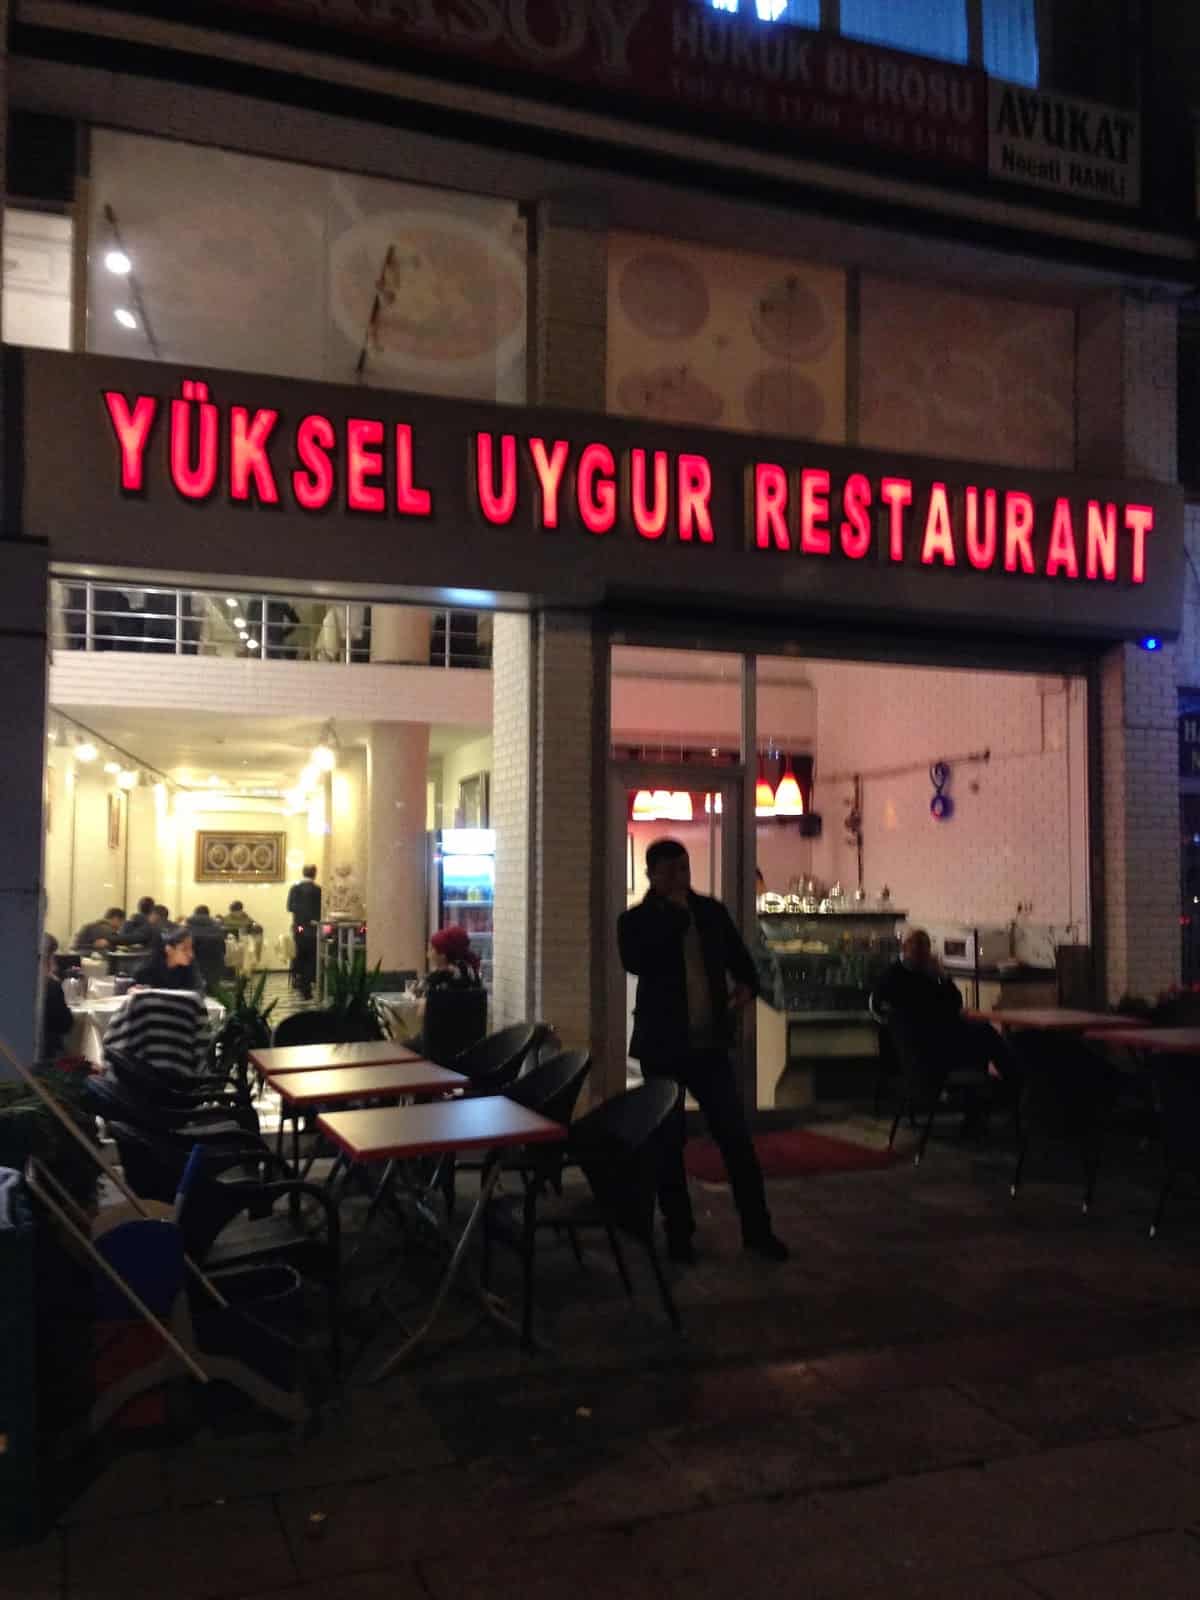 Yüksel Uygur Restaurant in Aksaray, Istanbul, Turkey